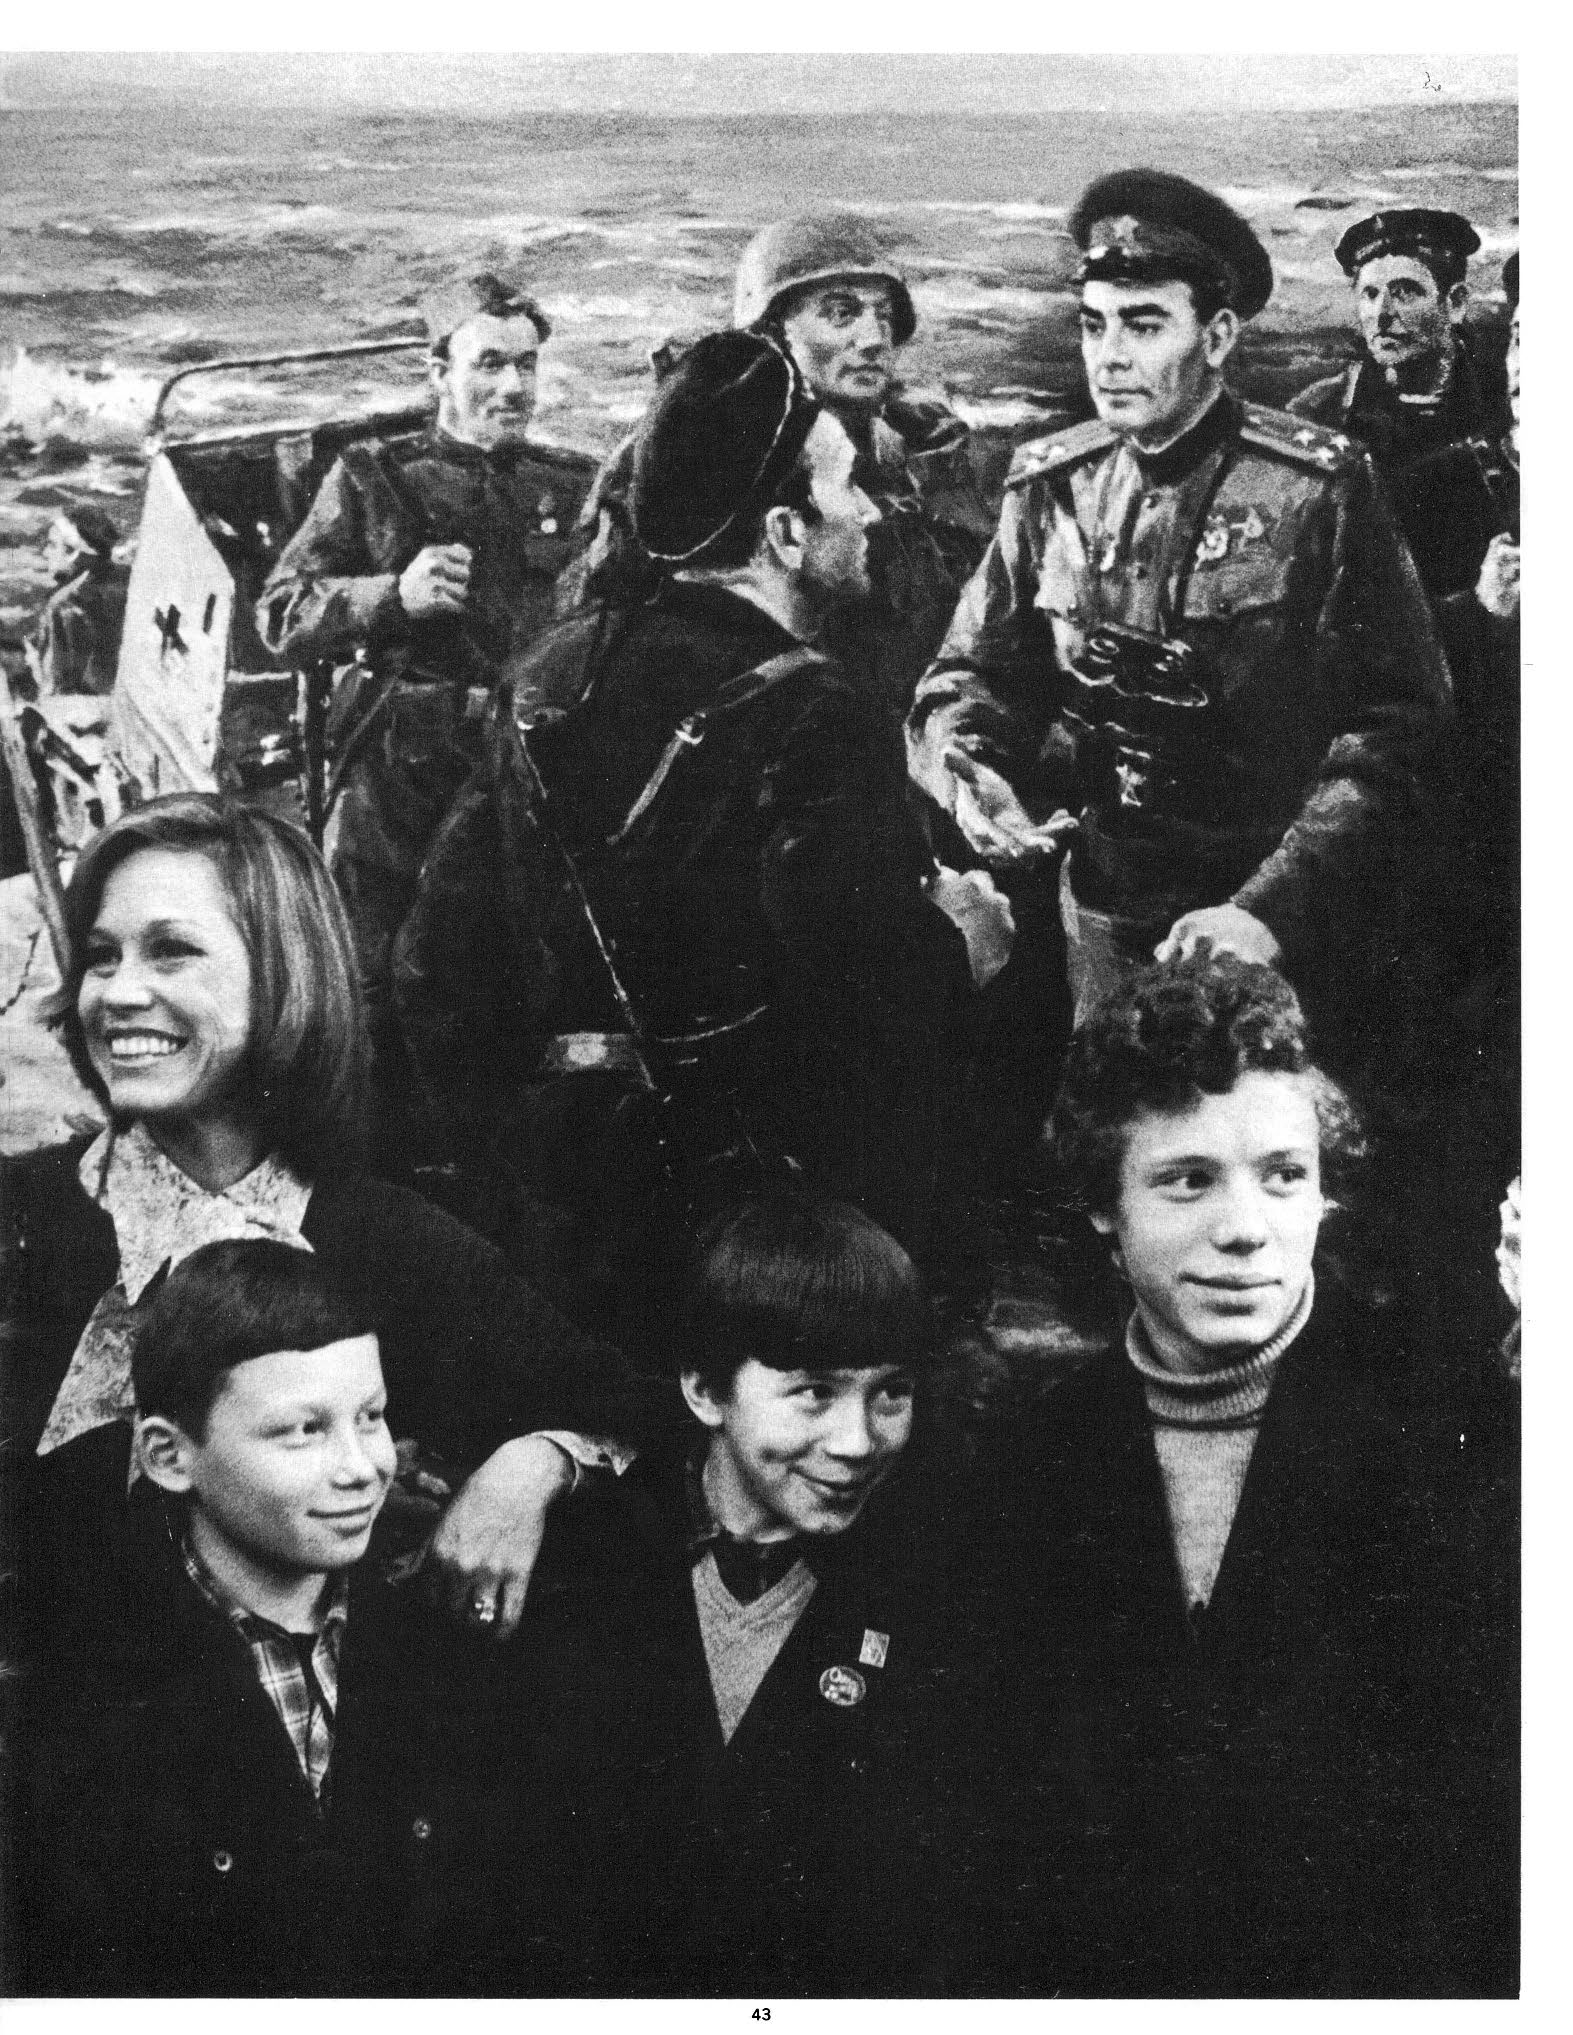 Мэри Тайлор Мур с советскими школьниками у картины про Л.И. Брежнева в ВОВ, Третьяковская галерея. Америка 1977-01 (242).jpg